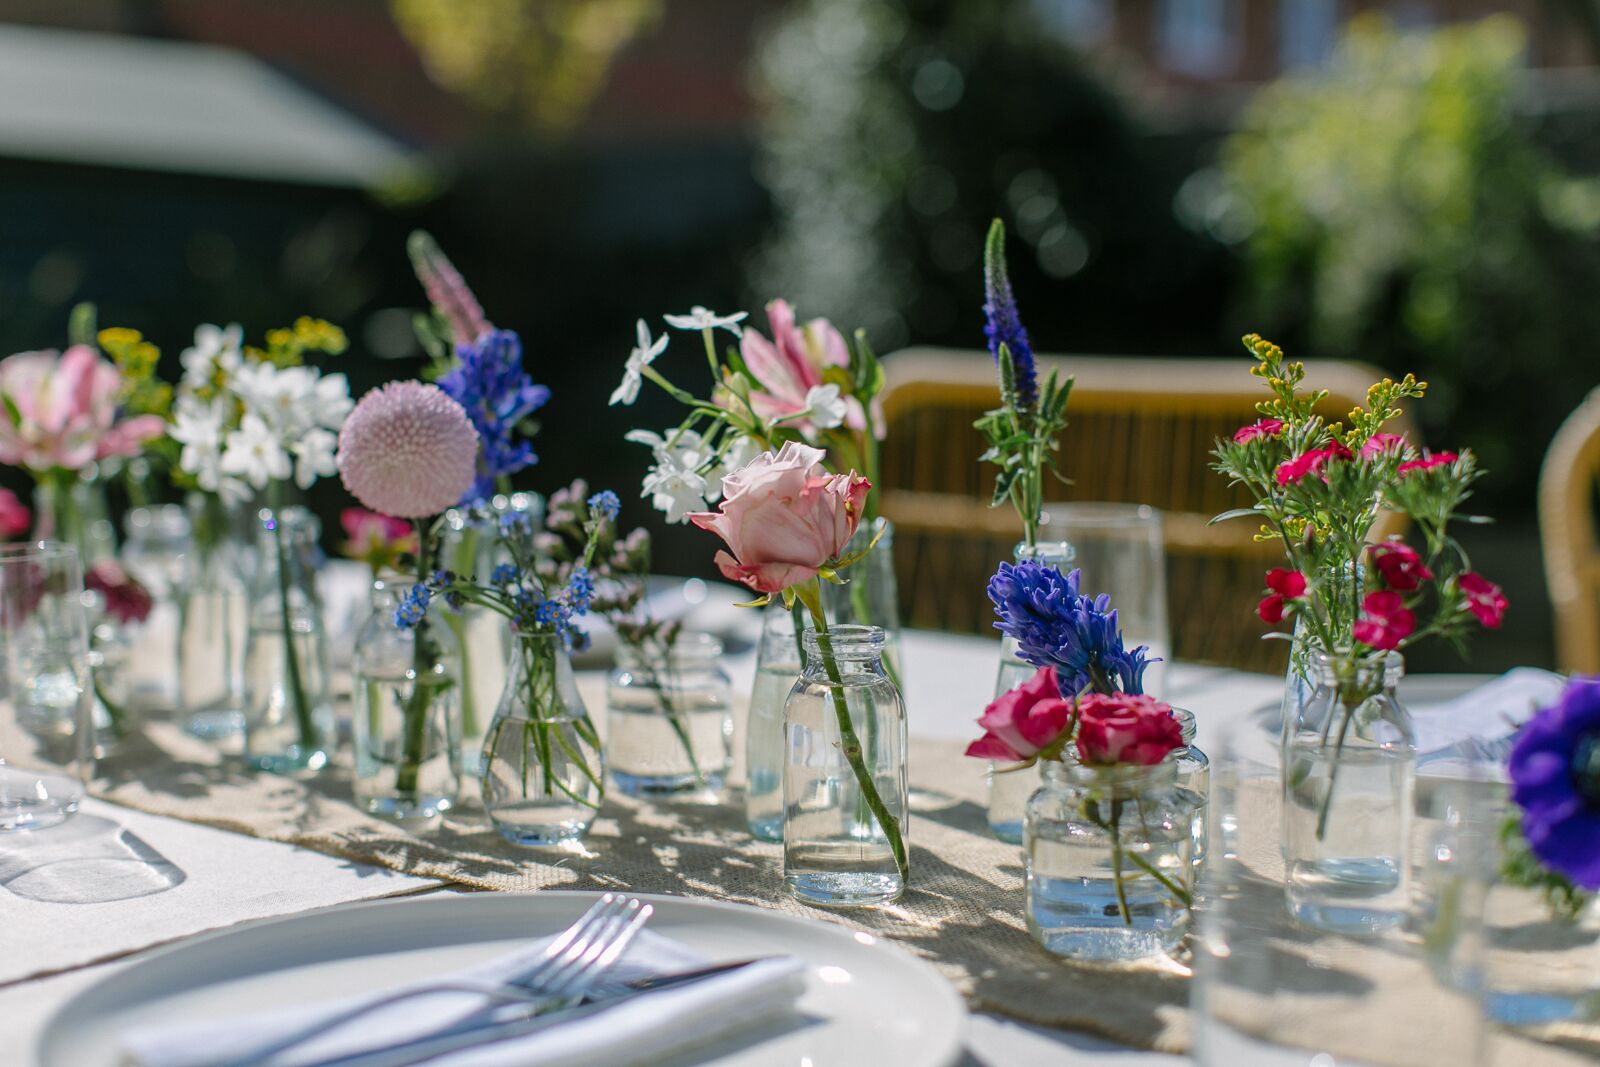 Bloemen als decoratie op de tafels bij het diner